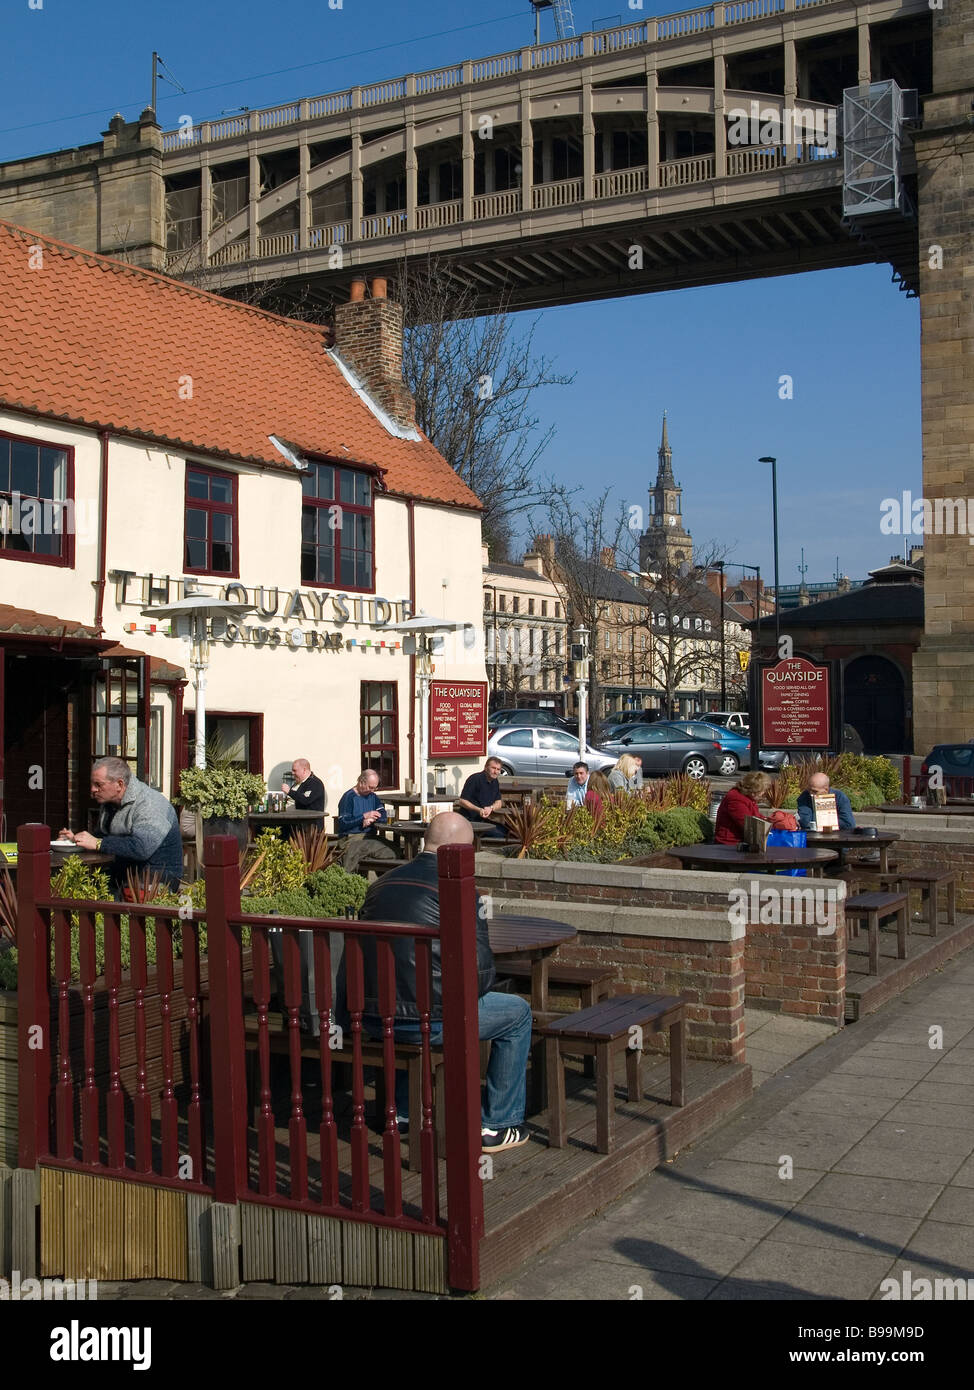 Bar Lloyds sur la rive de la rivière Tyne Newcastle avec le haut niveau historique route rail bridge derrière Banque D'Images